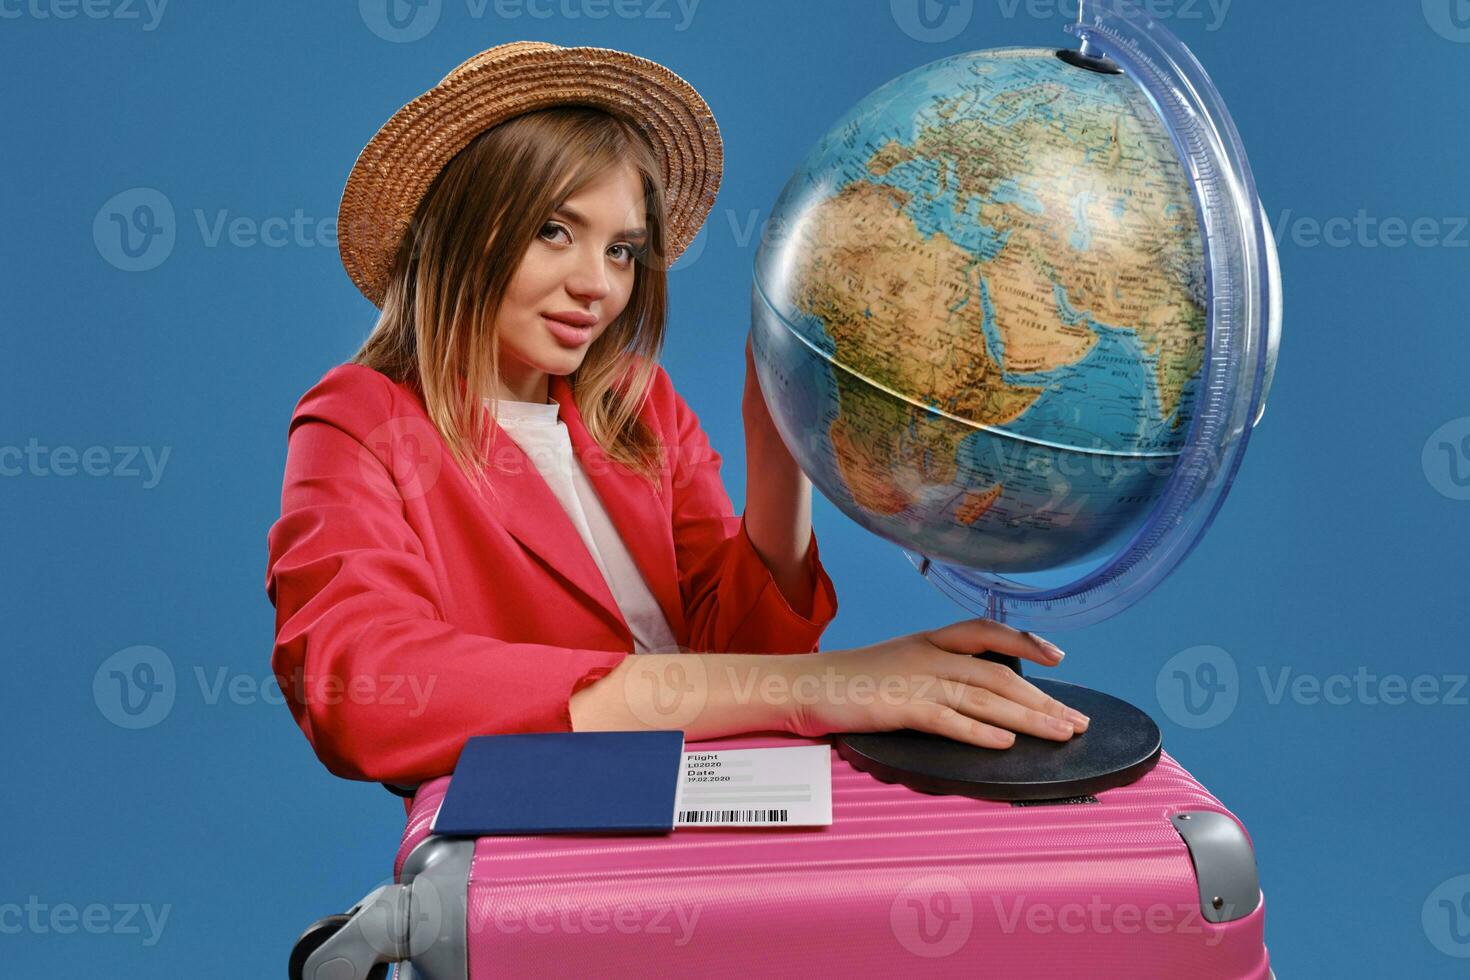 blond Dame im Stroh Hut, Weiß Bluse, rot Jacke. halten Globus Stehen auf Rosa Koffer, Reisepass und Fahrkarte nahe, posieren auf Blau Hintergrund foto